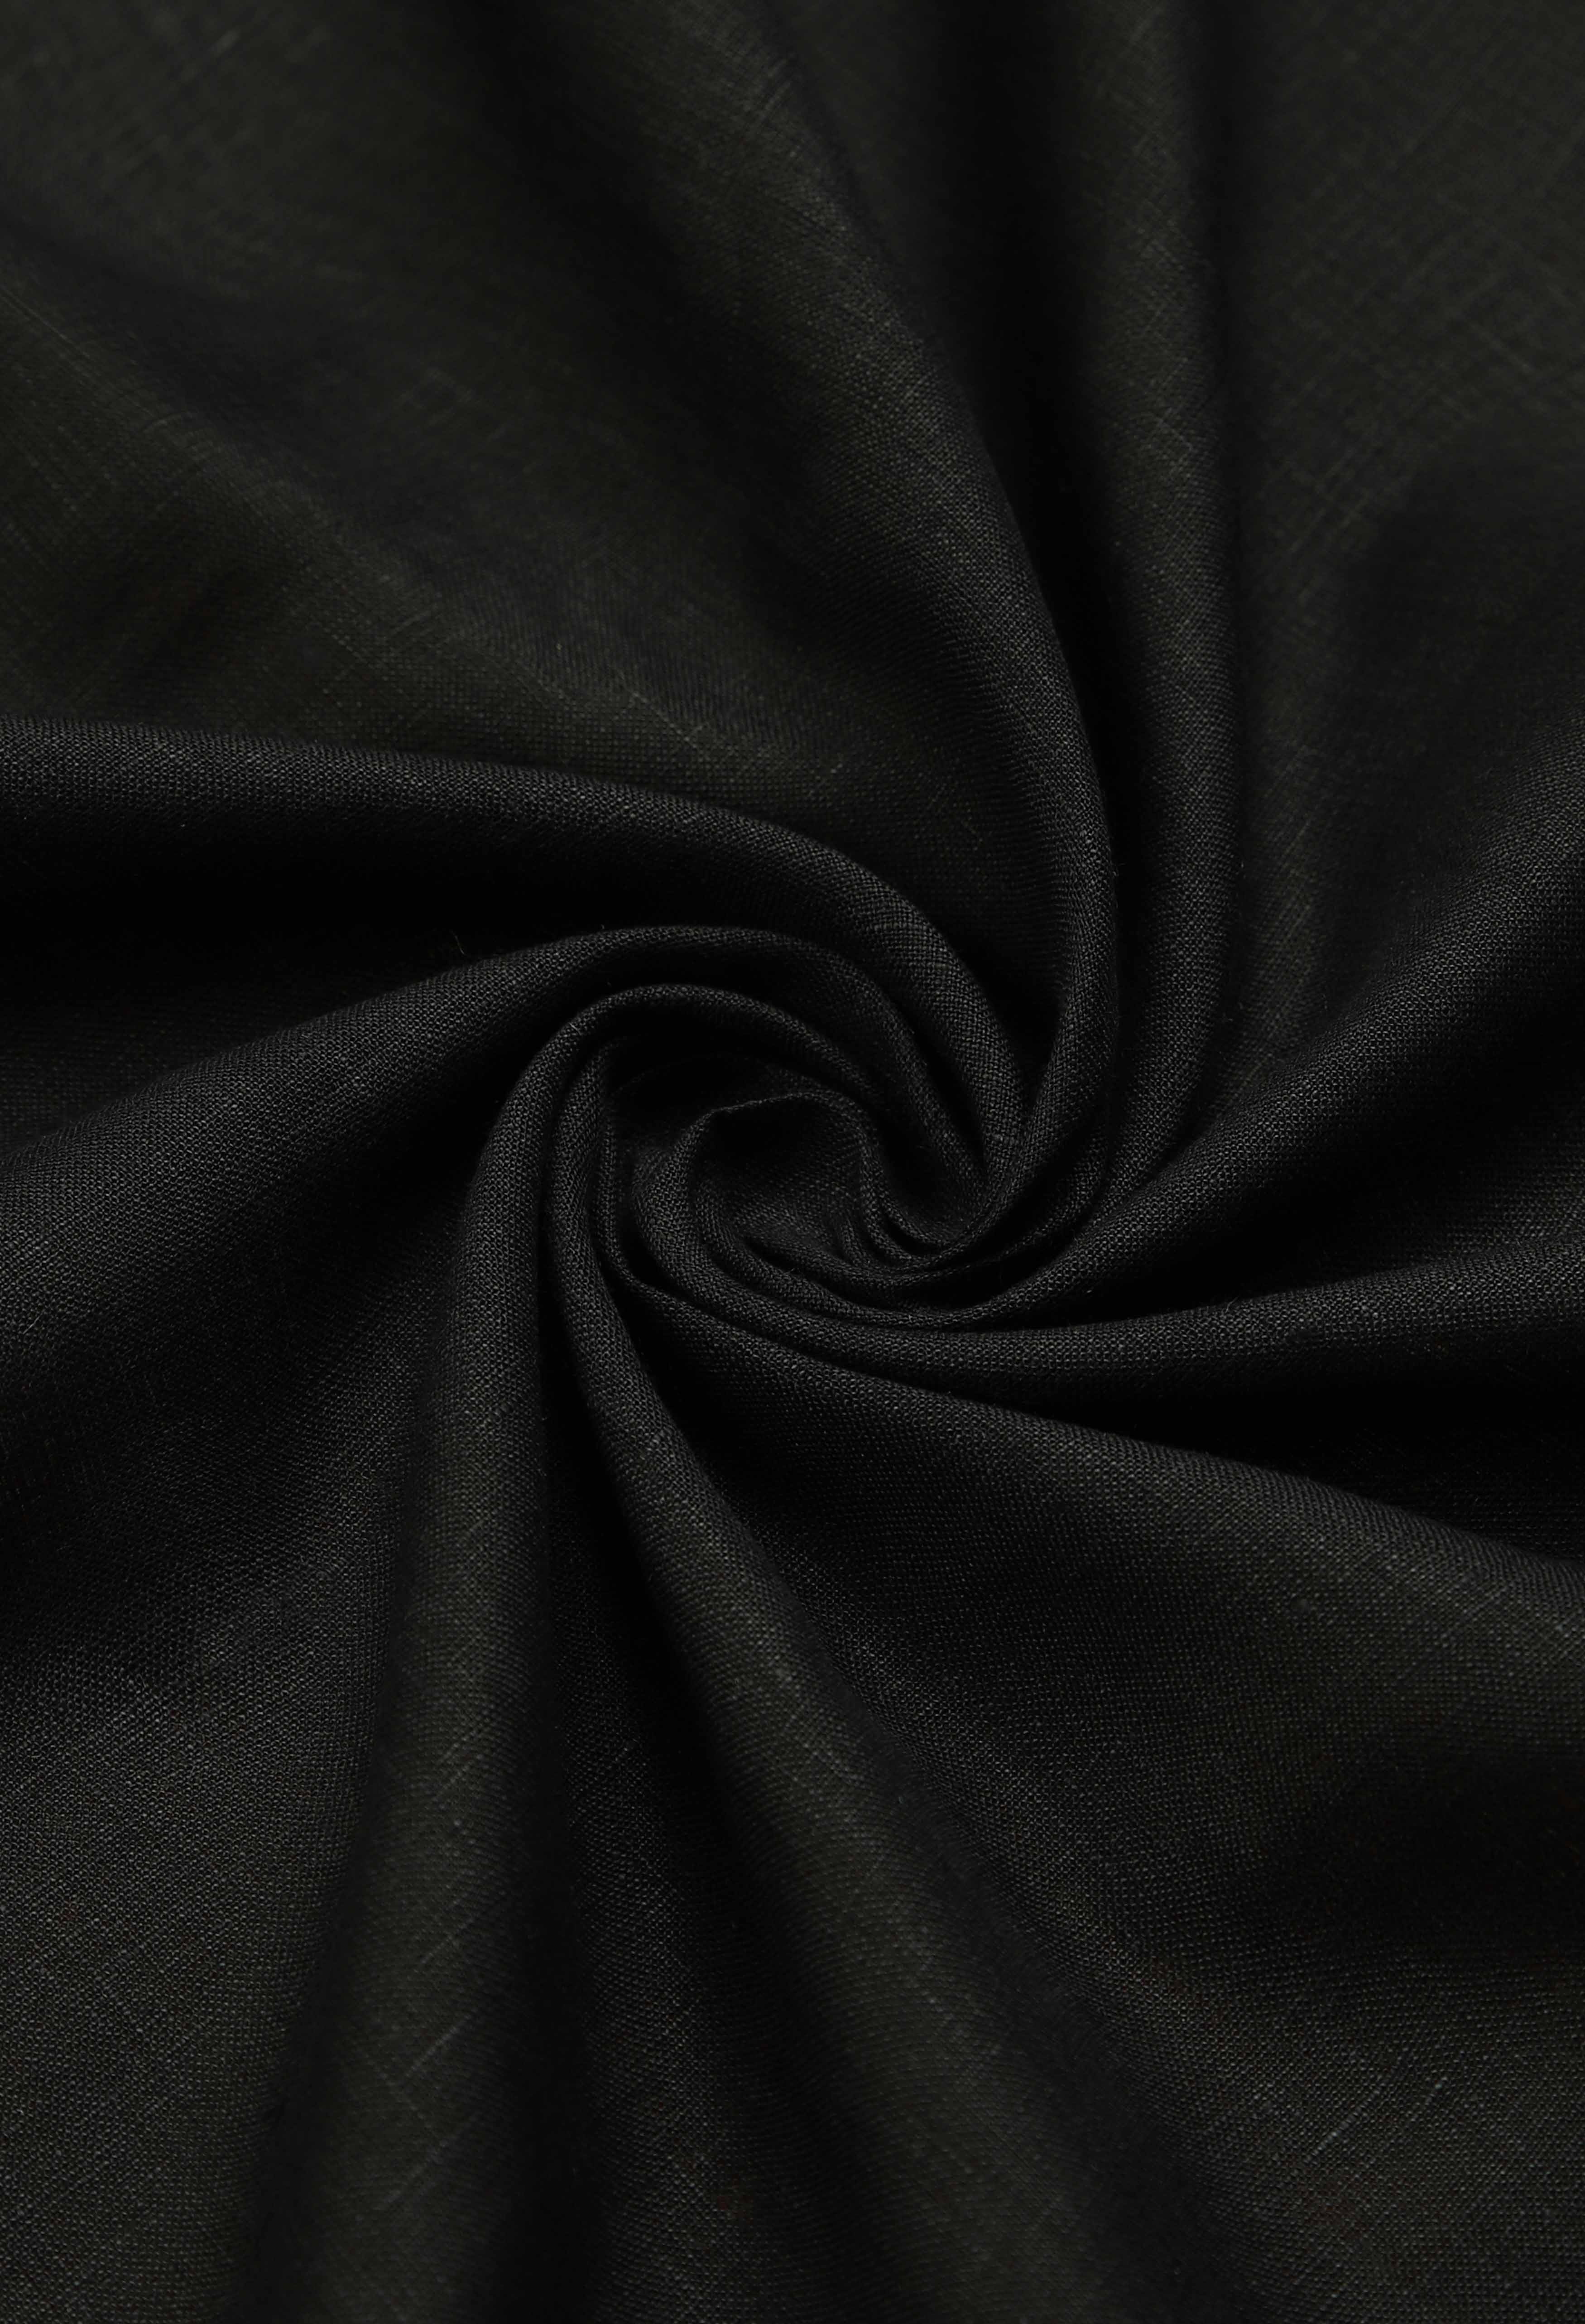 Coal Black Linen